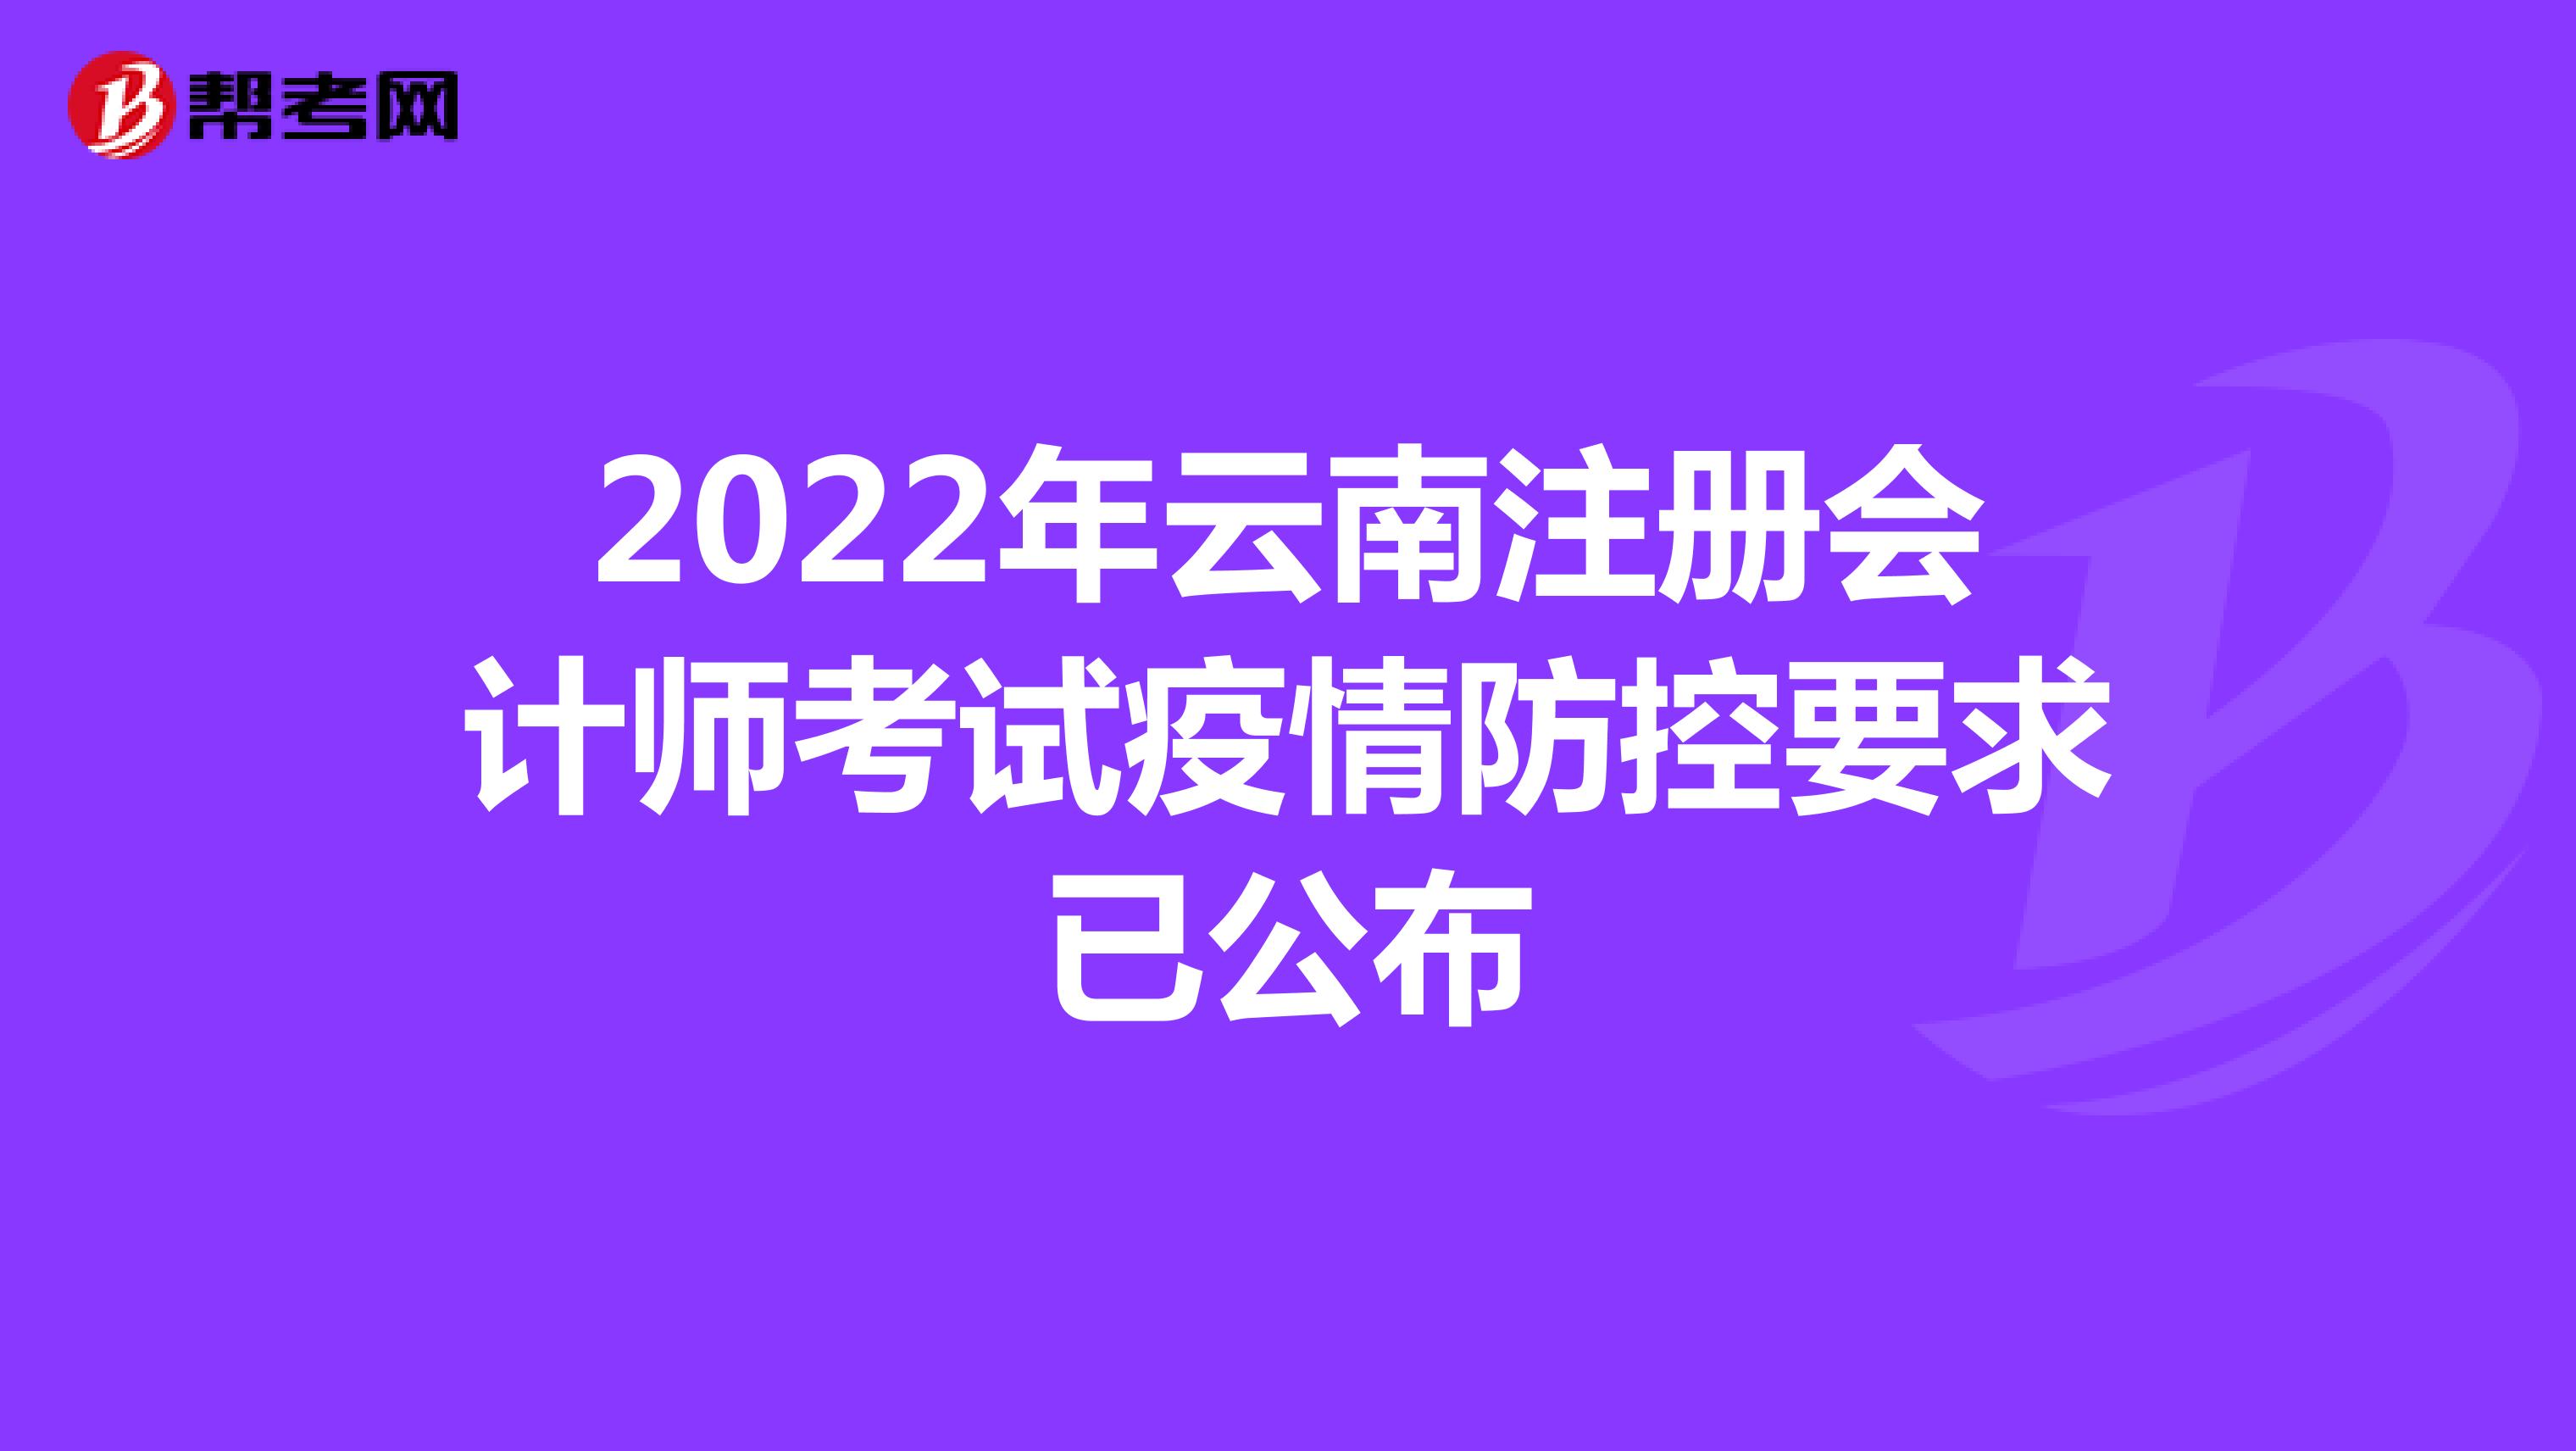 2022年云南注册会计师考试疫情防控要求已公布